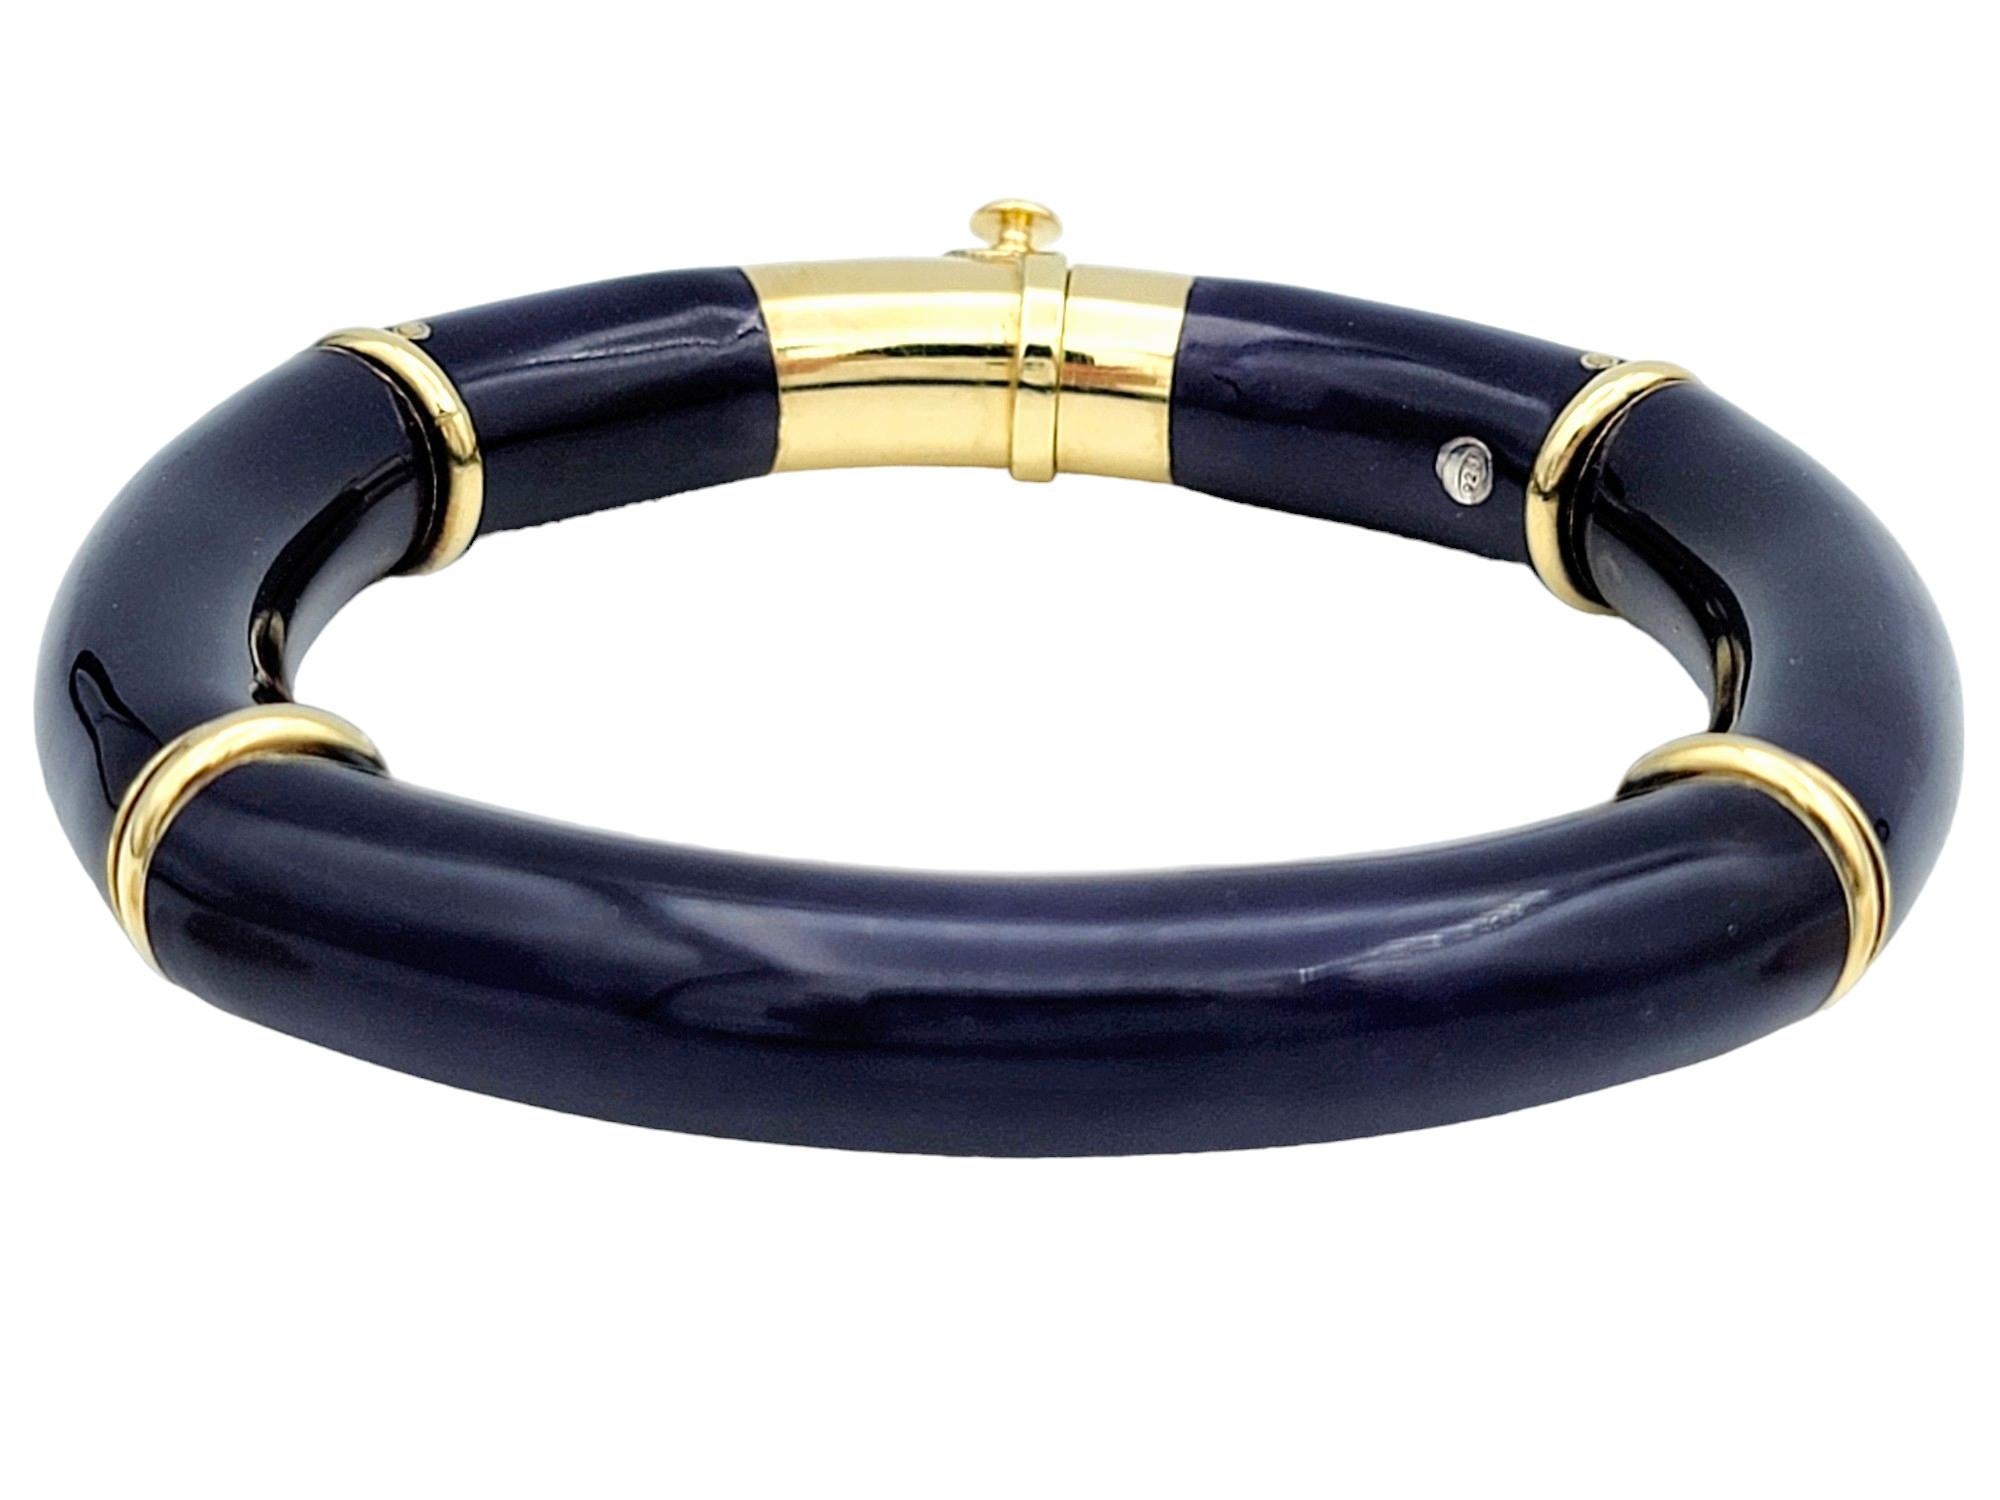 Ce magnifique bracelet flexible de La Nouvelle Bague est un bijou époustouflant qui allie harmonieusement l'élégance et le style contemporain. Fabriqué en or jaune 18 carats, ce bracelet est synonyme de luxe et de sophistication. Sa conception